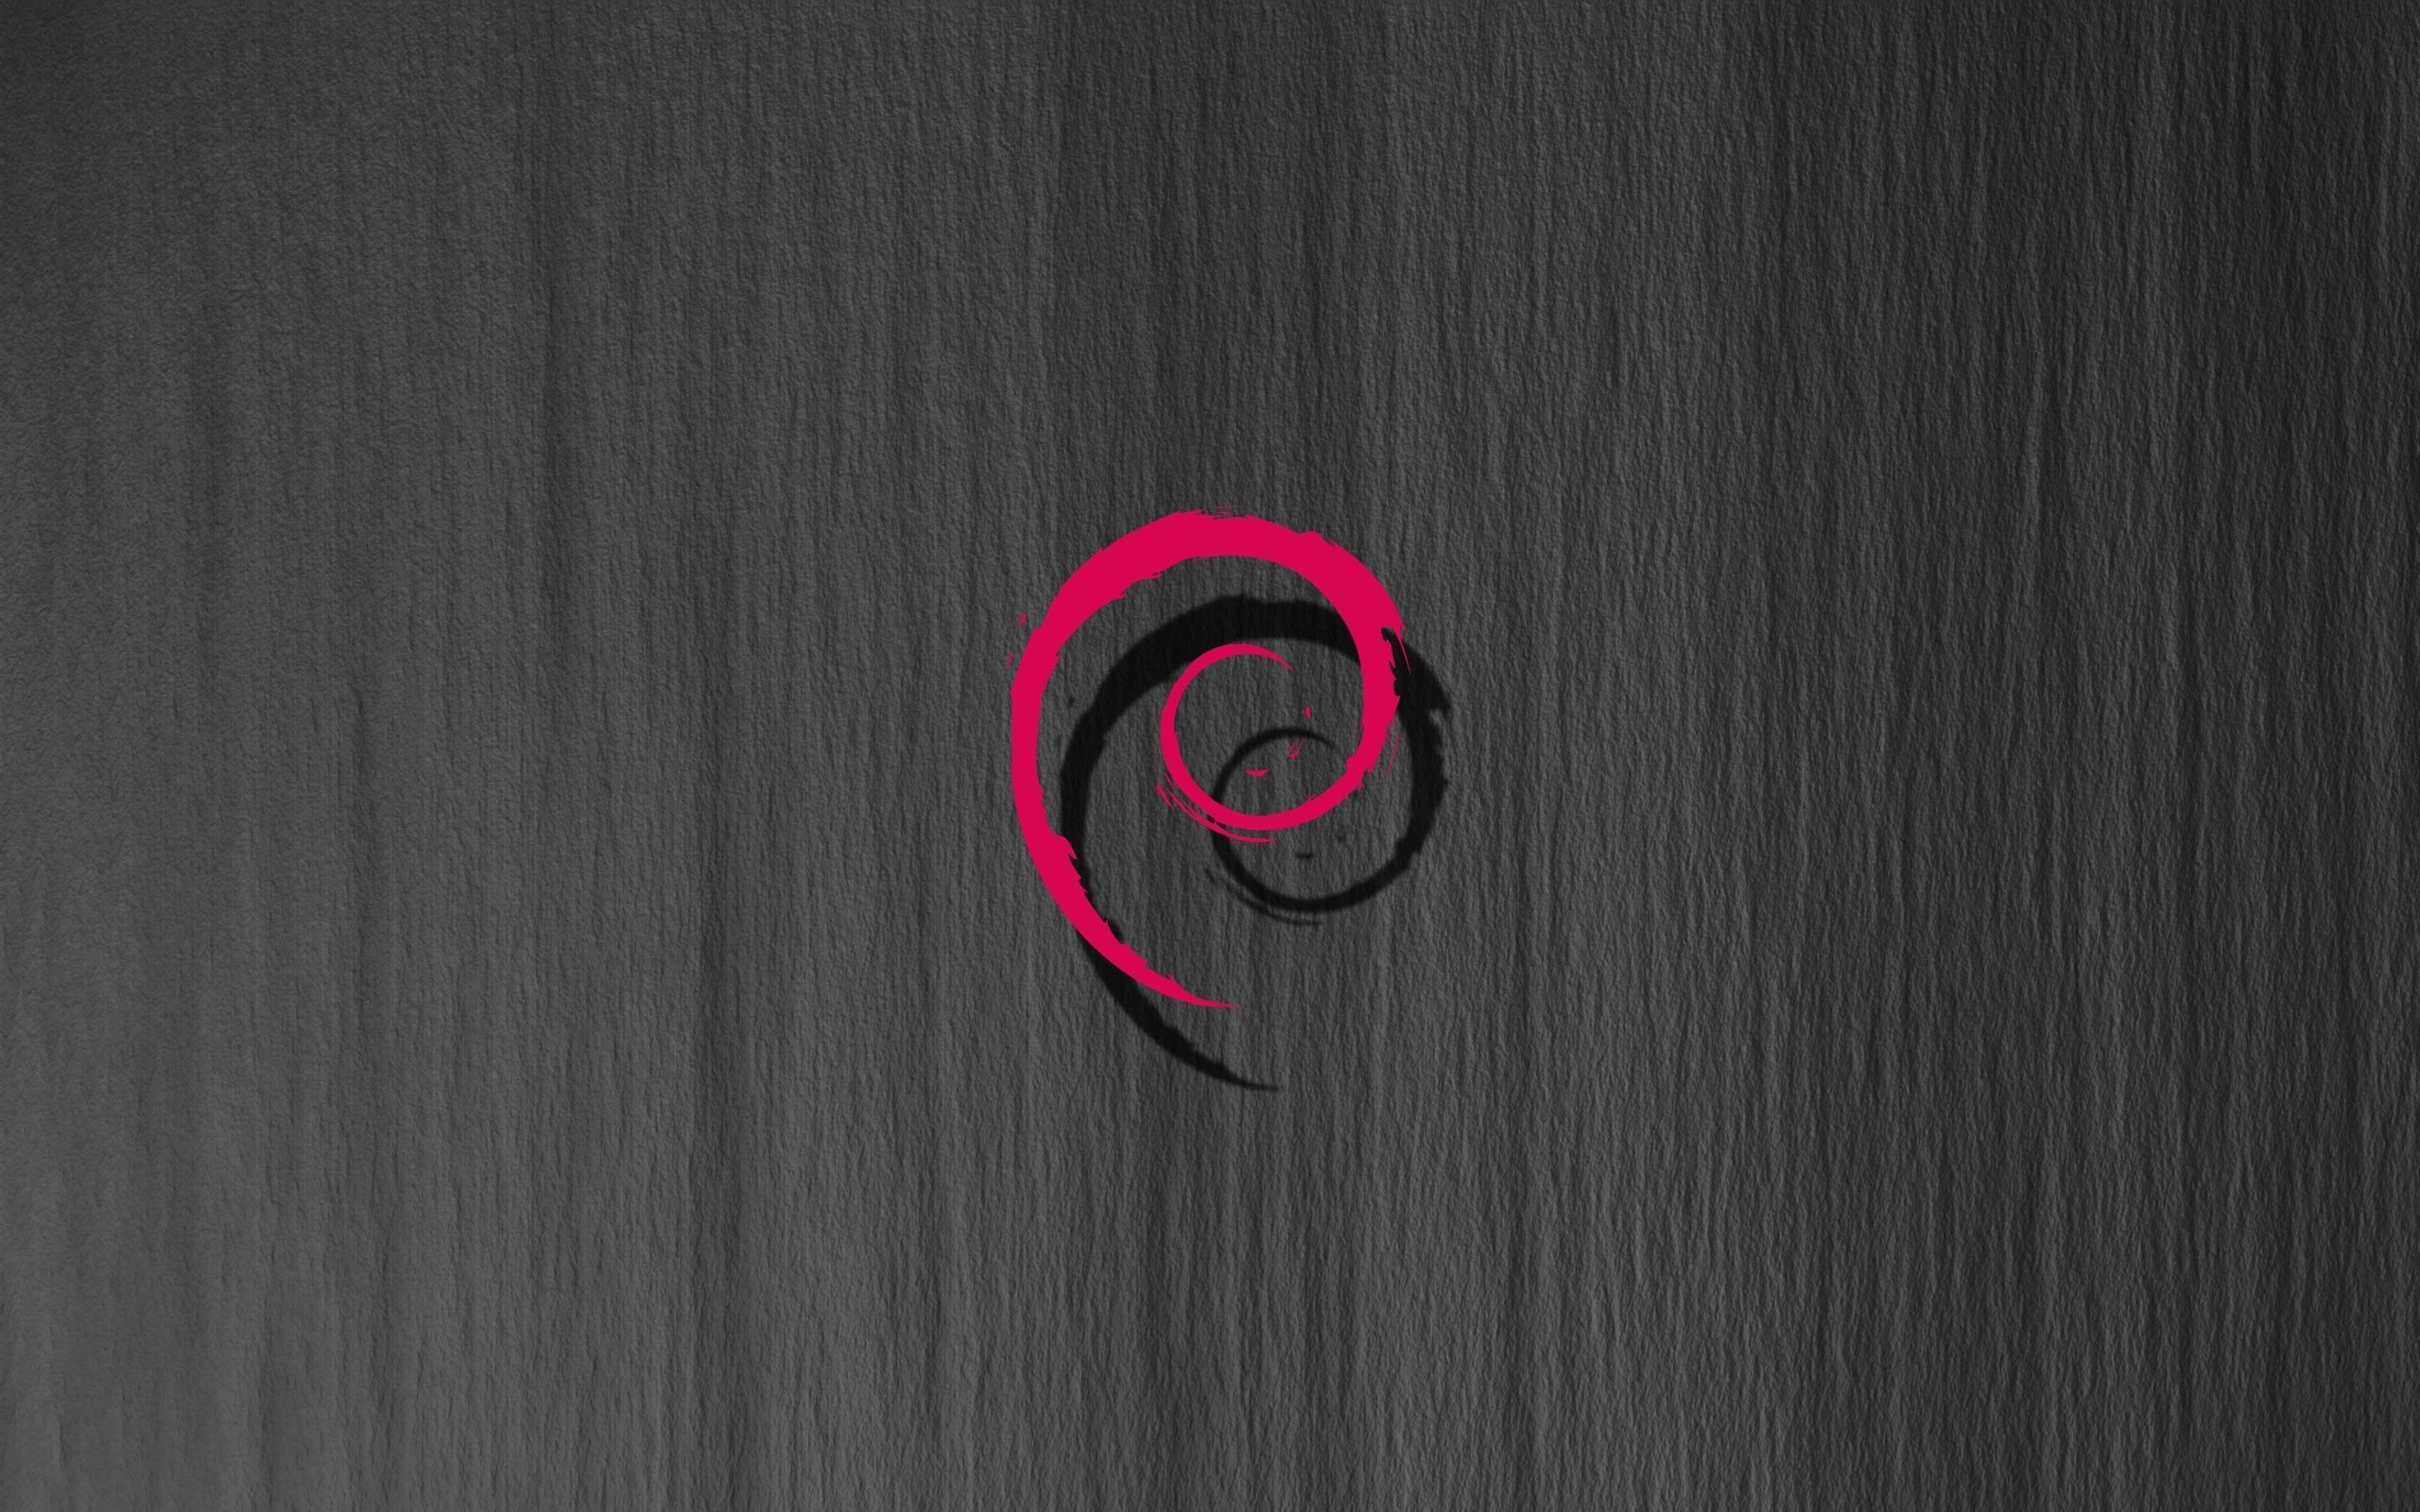 Debian Gnu Linux Open Source Background Wallpaper In 2020. Linux, Gnu, Open Source